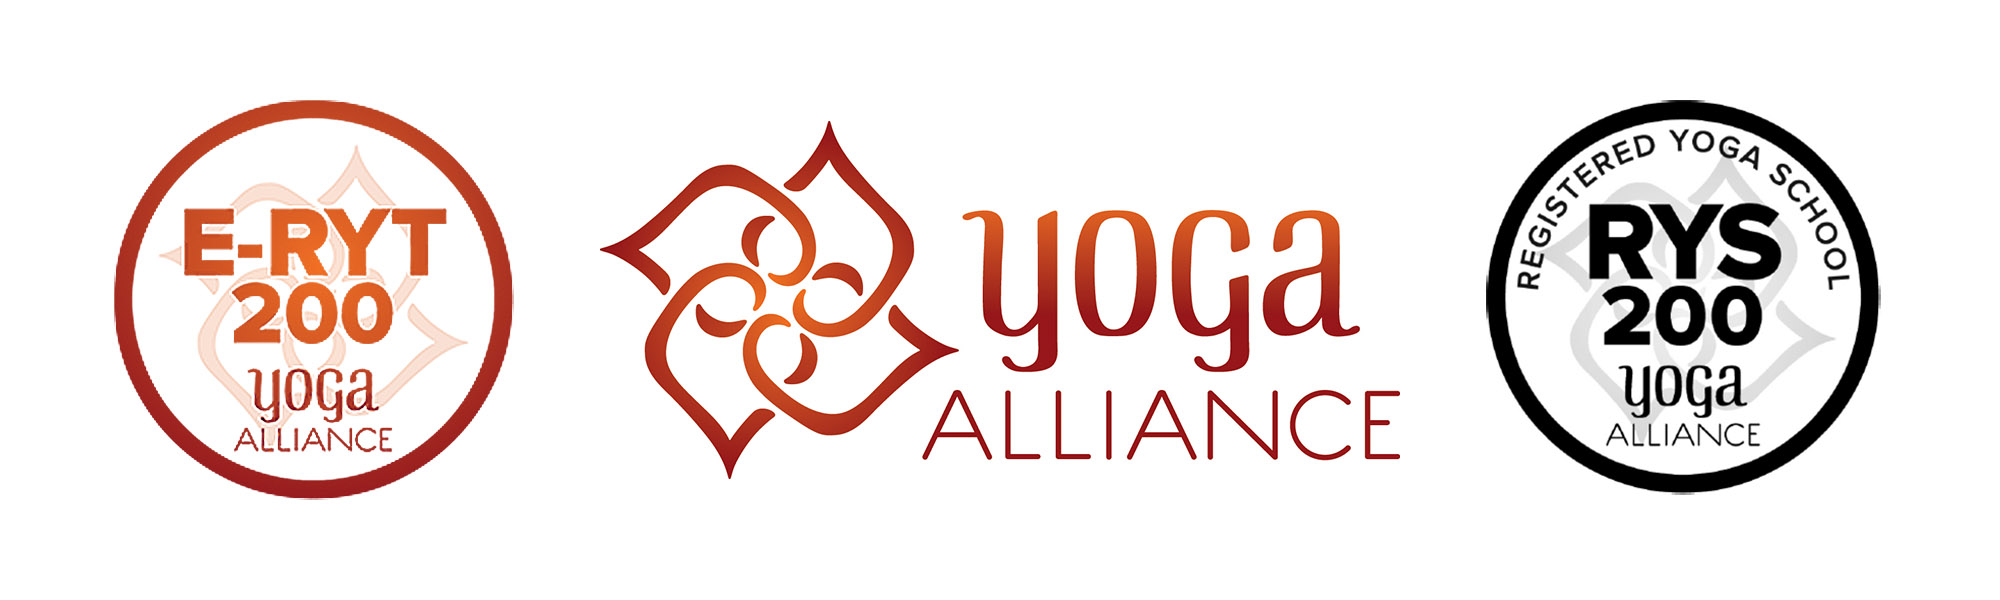 https://www.apura-yoga.com/wp-content/uploads/2018/07/Yoga-Alliance-Banner.jpg